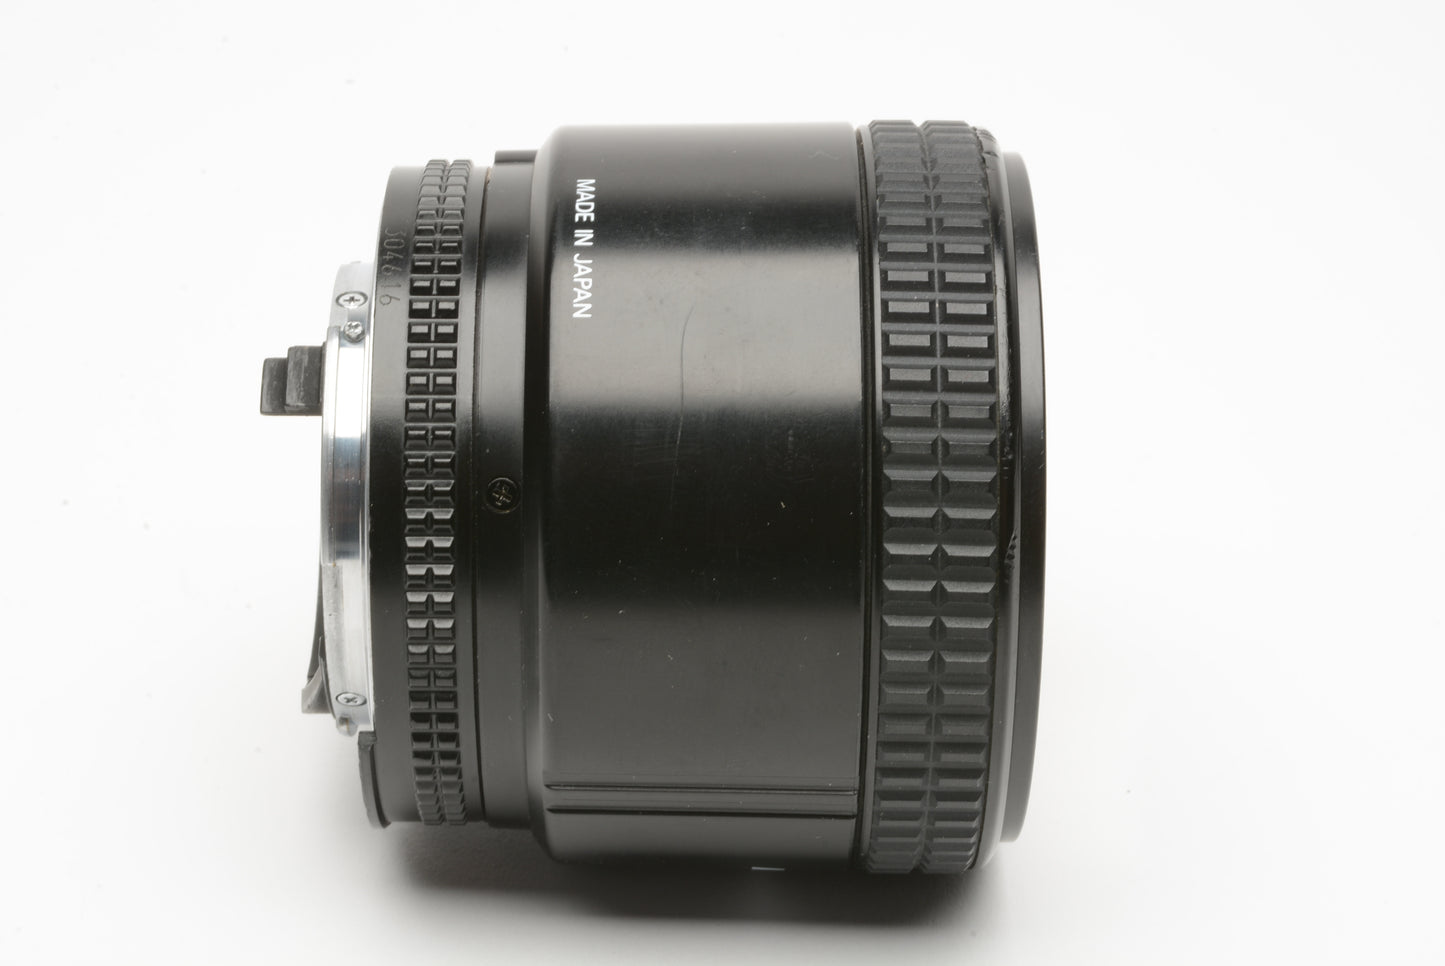 Nikon AF Nikkor 85mm F1.8 portrait lens, caps, hood, box, sharp!